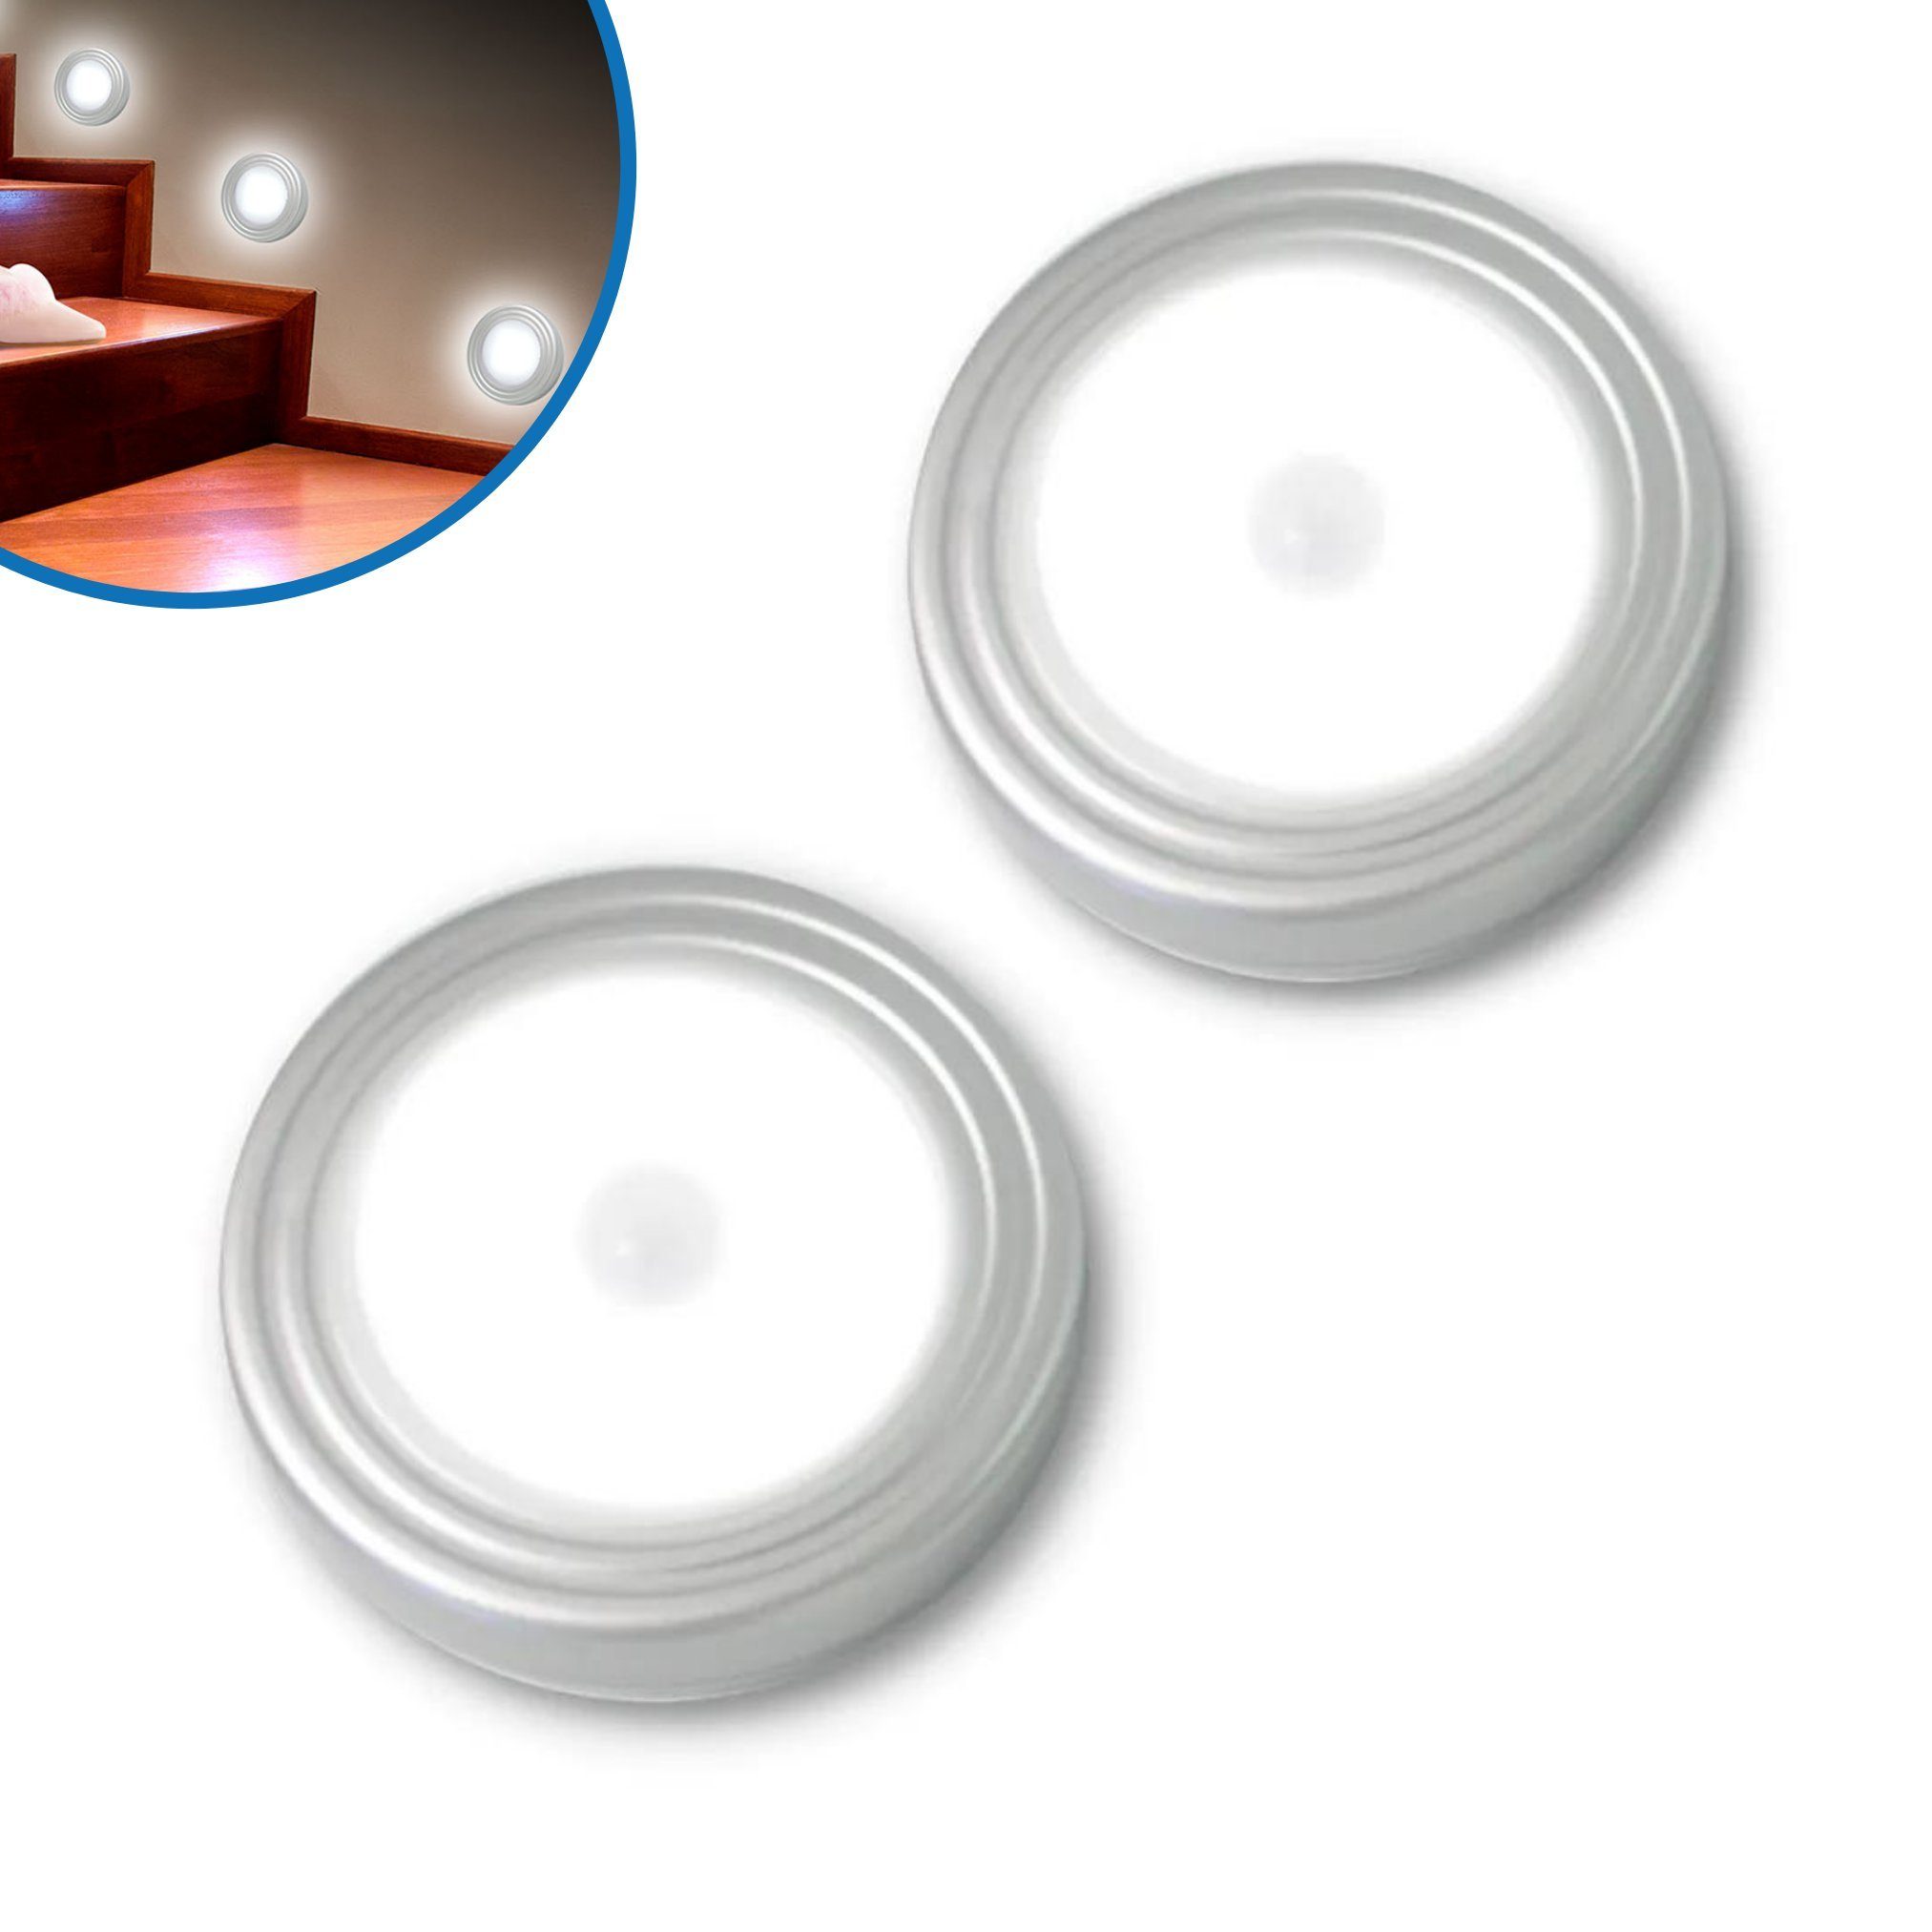 Silberne LED Wandlampen online kaufen | OTTO